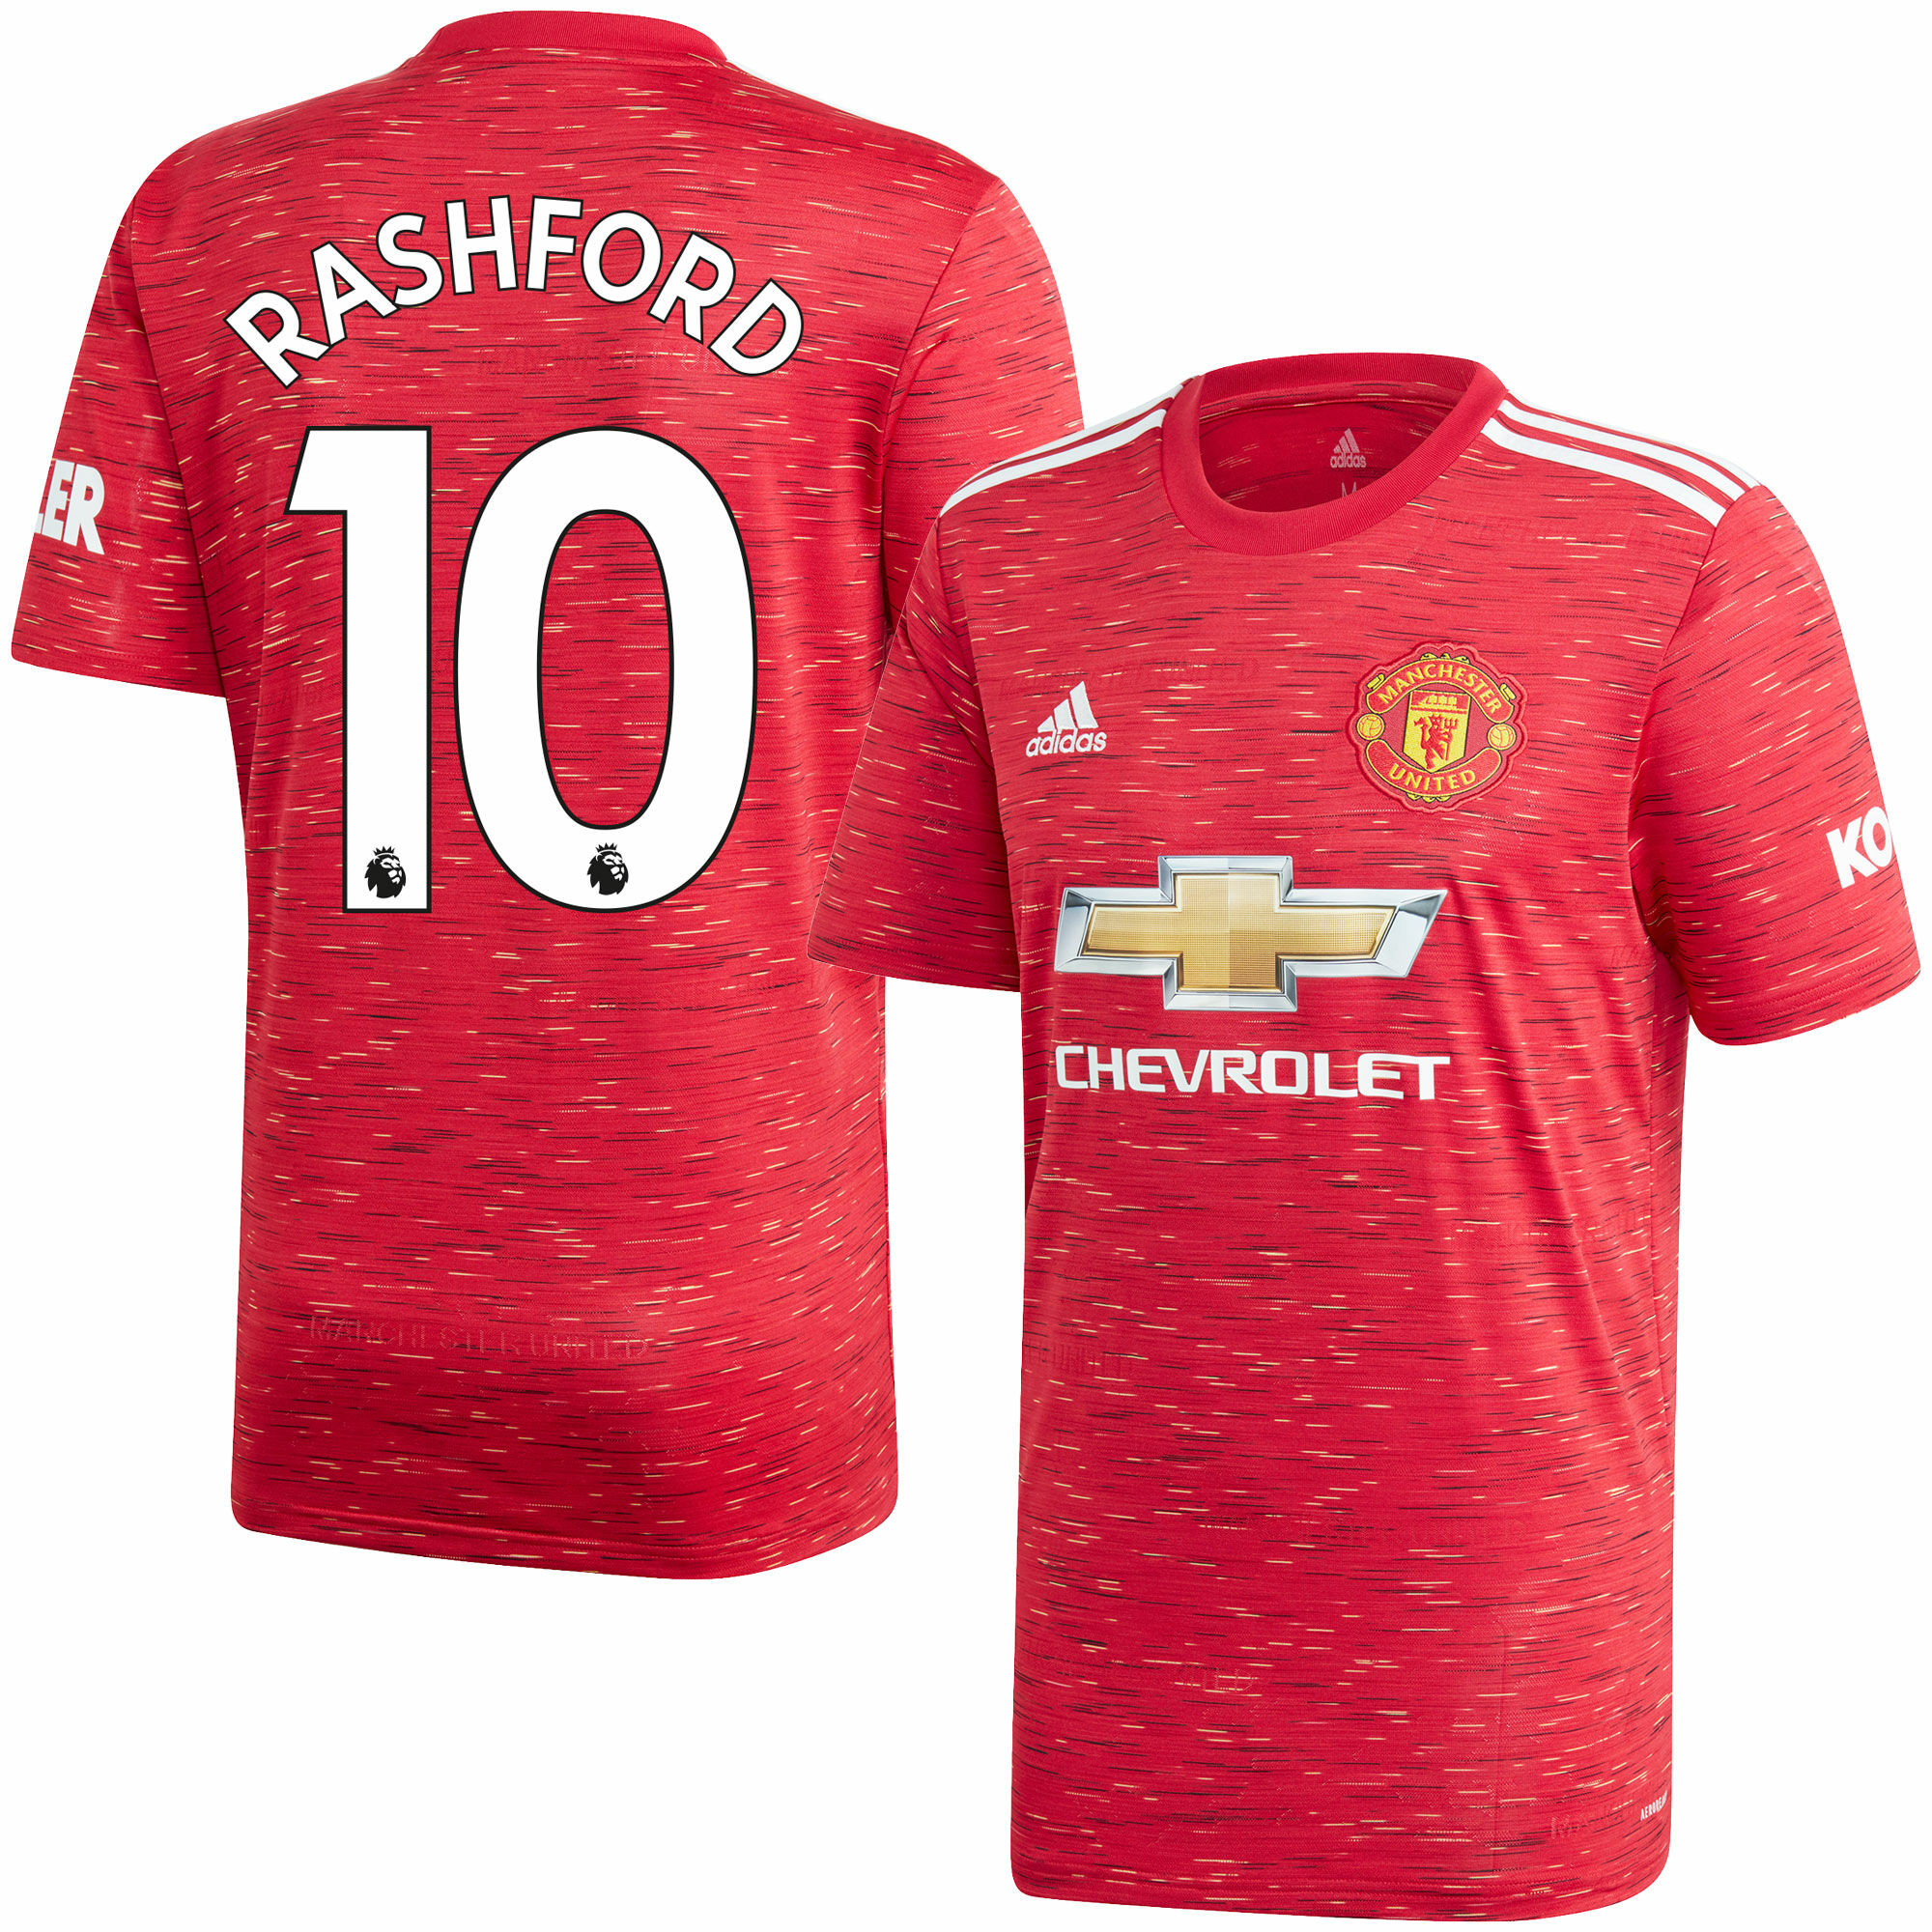 Manchester United - Dres fotbalový - sezóna 2020/21, číslo 10, Marcus Rashford, domácí, červený